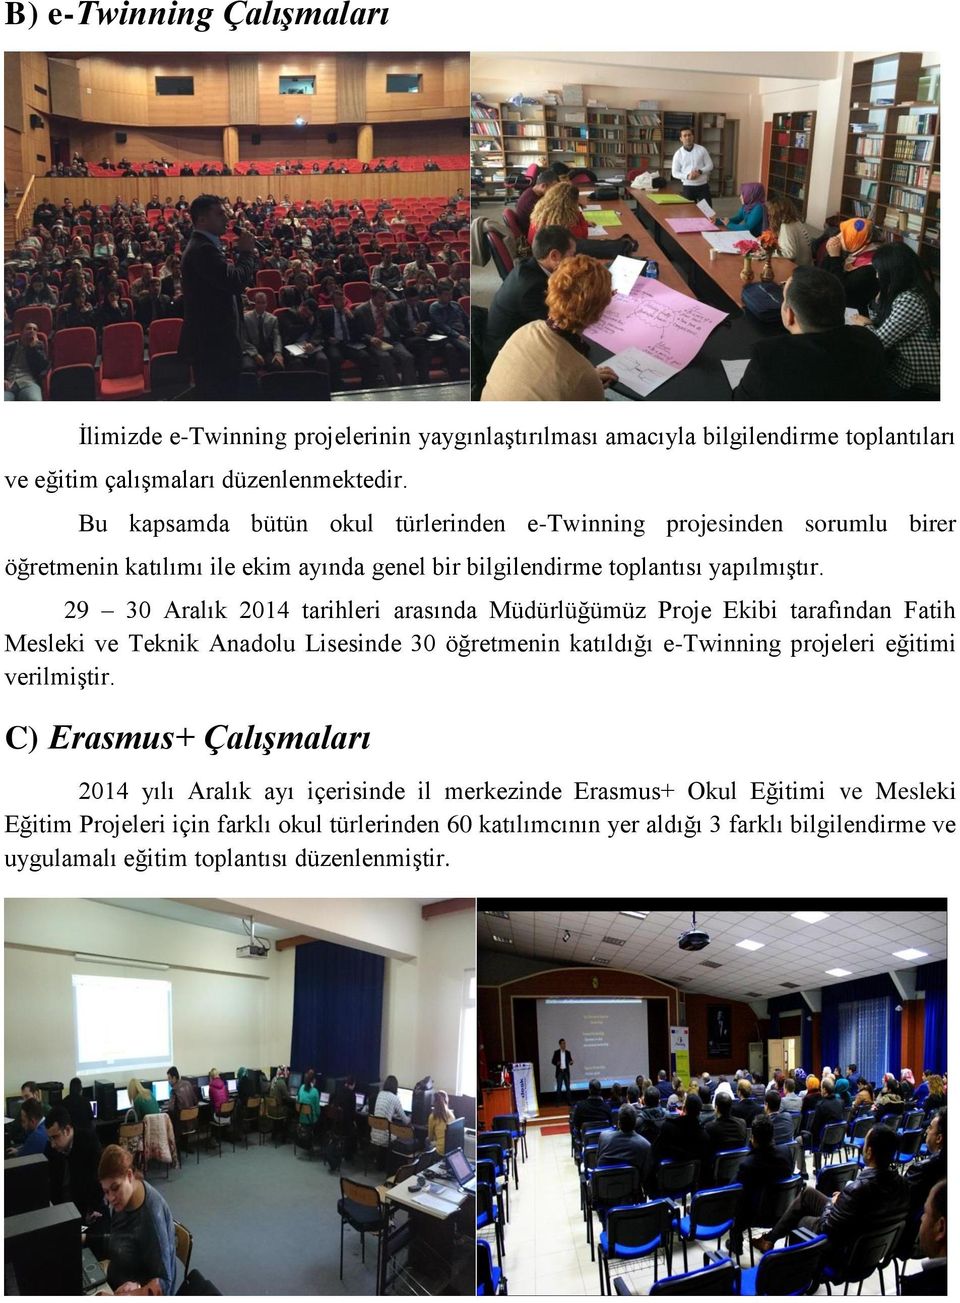 29 30 Aralık 2014 tarihleri arasında Müdürlüğümüz Proje Ekibi tarafından Fatih Mesleki ve Teknik Anadolu Lisesinde 30 öğretmenin katıldığı e-twinning projeleri eğitimi verilmiştir.